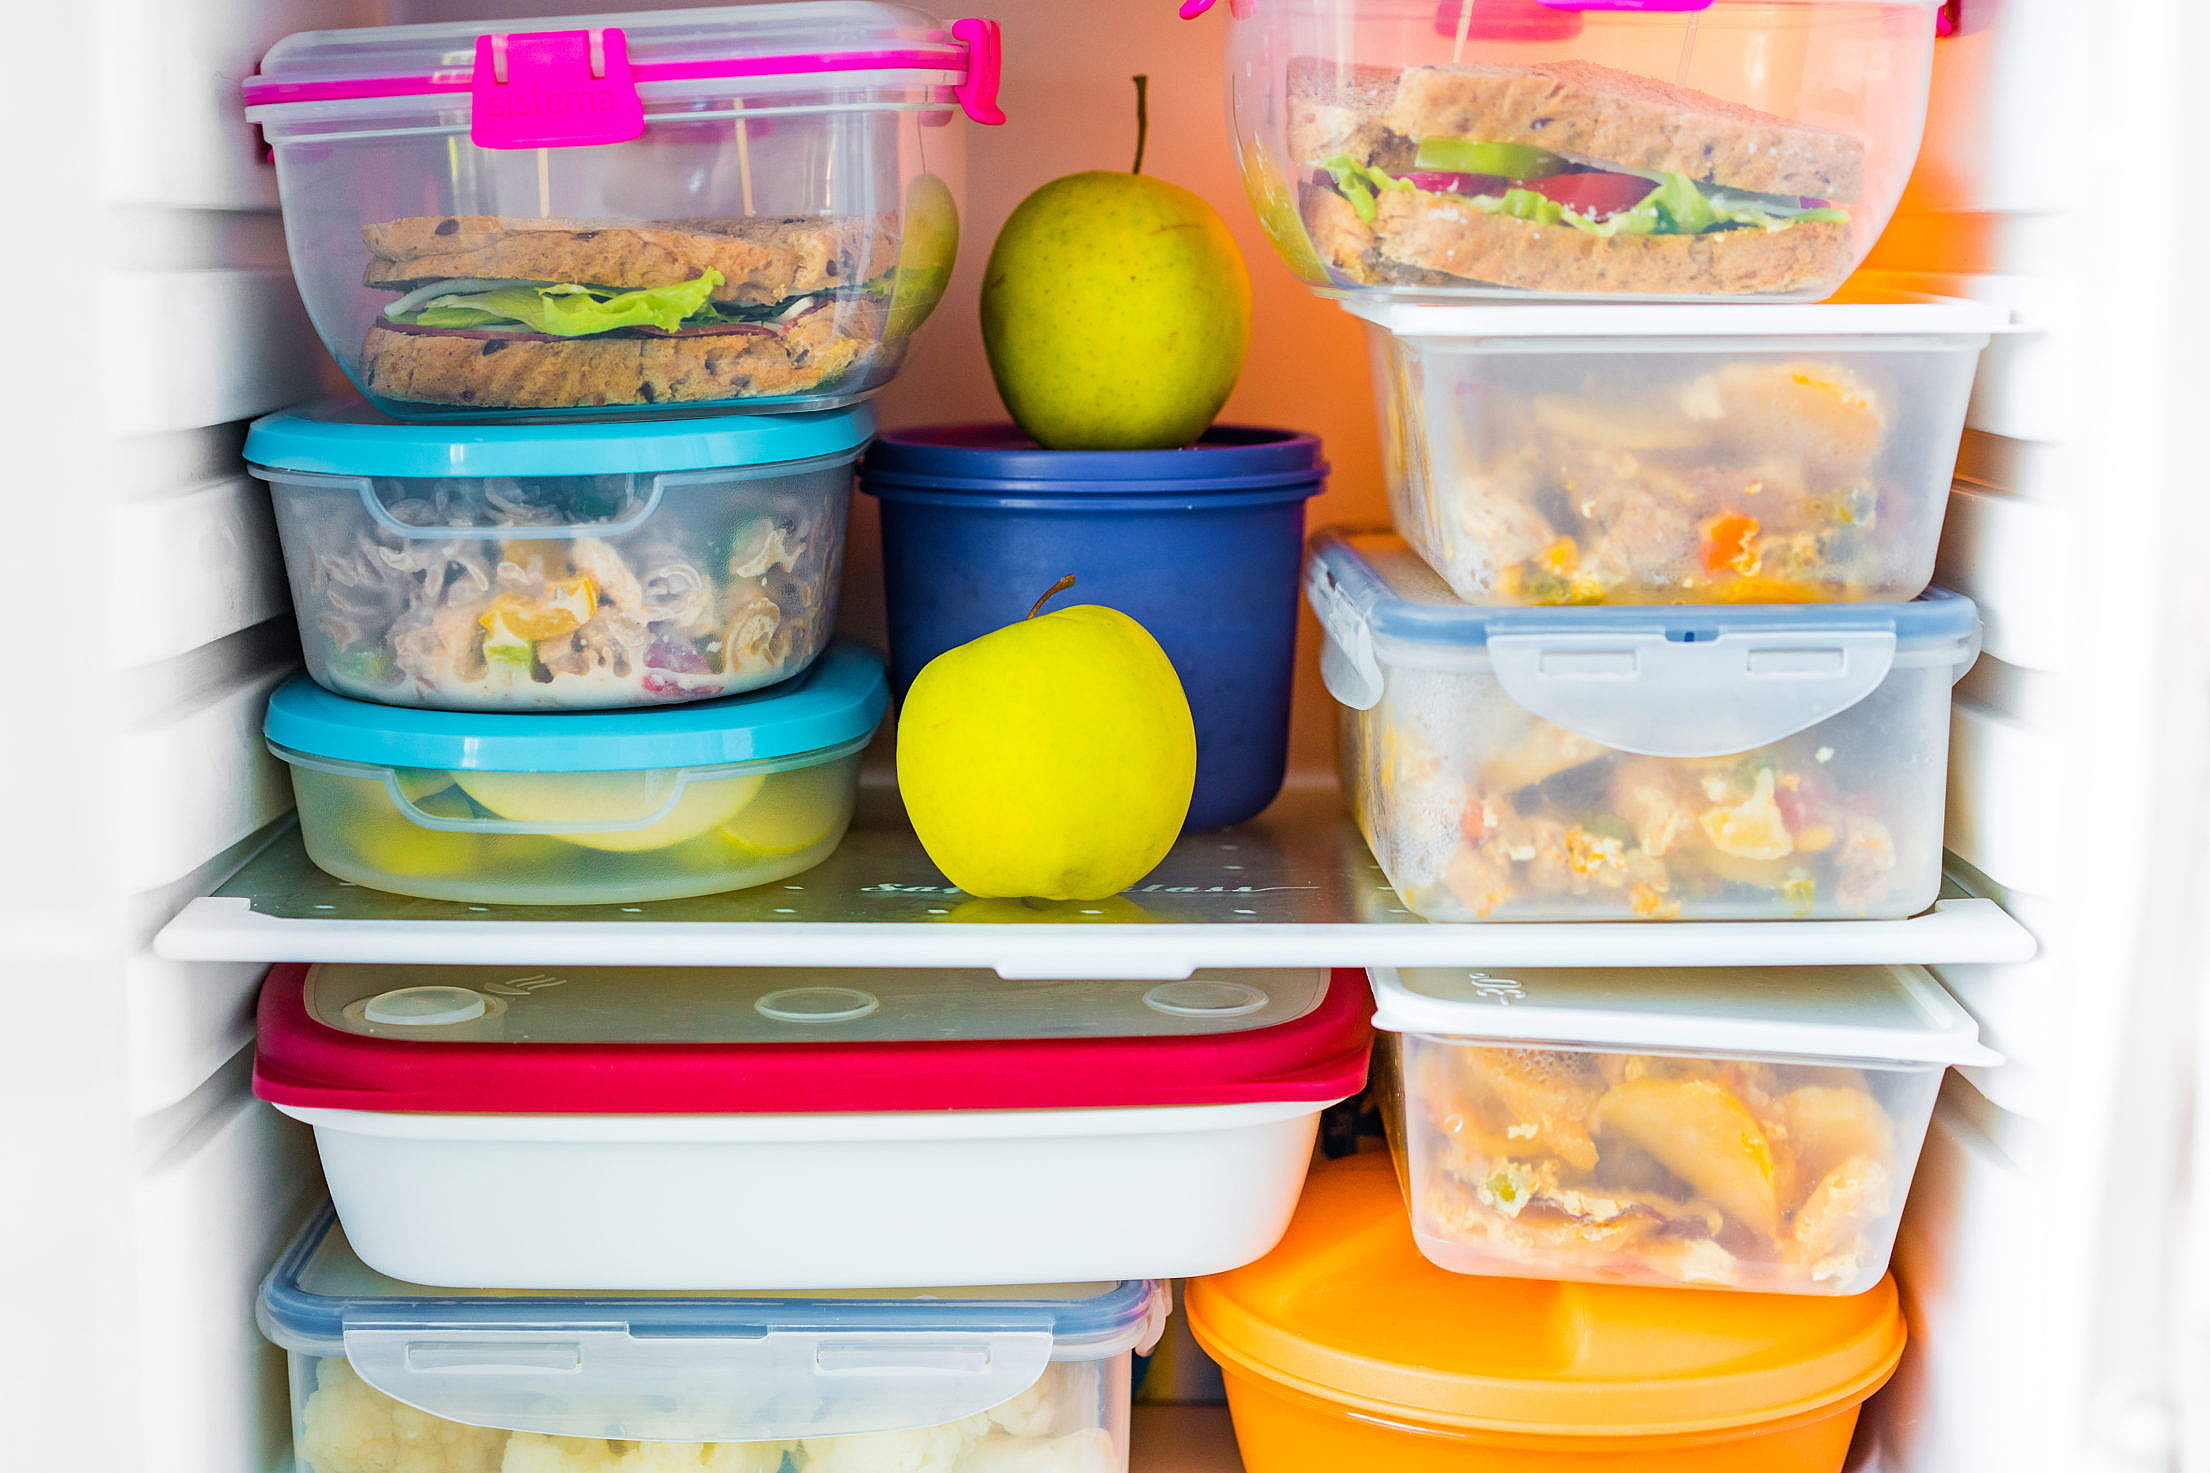 Hogyan pakoljunk a hűtőbe? Mindenekelőtt átláthatóan+